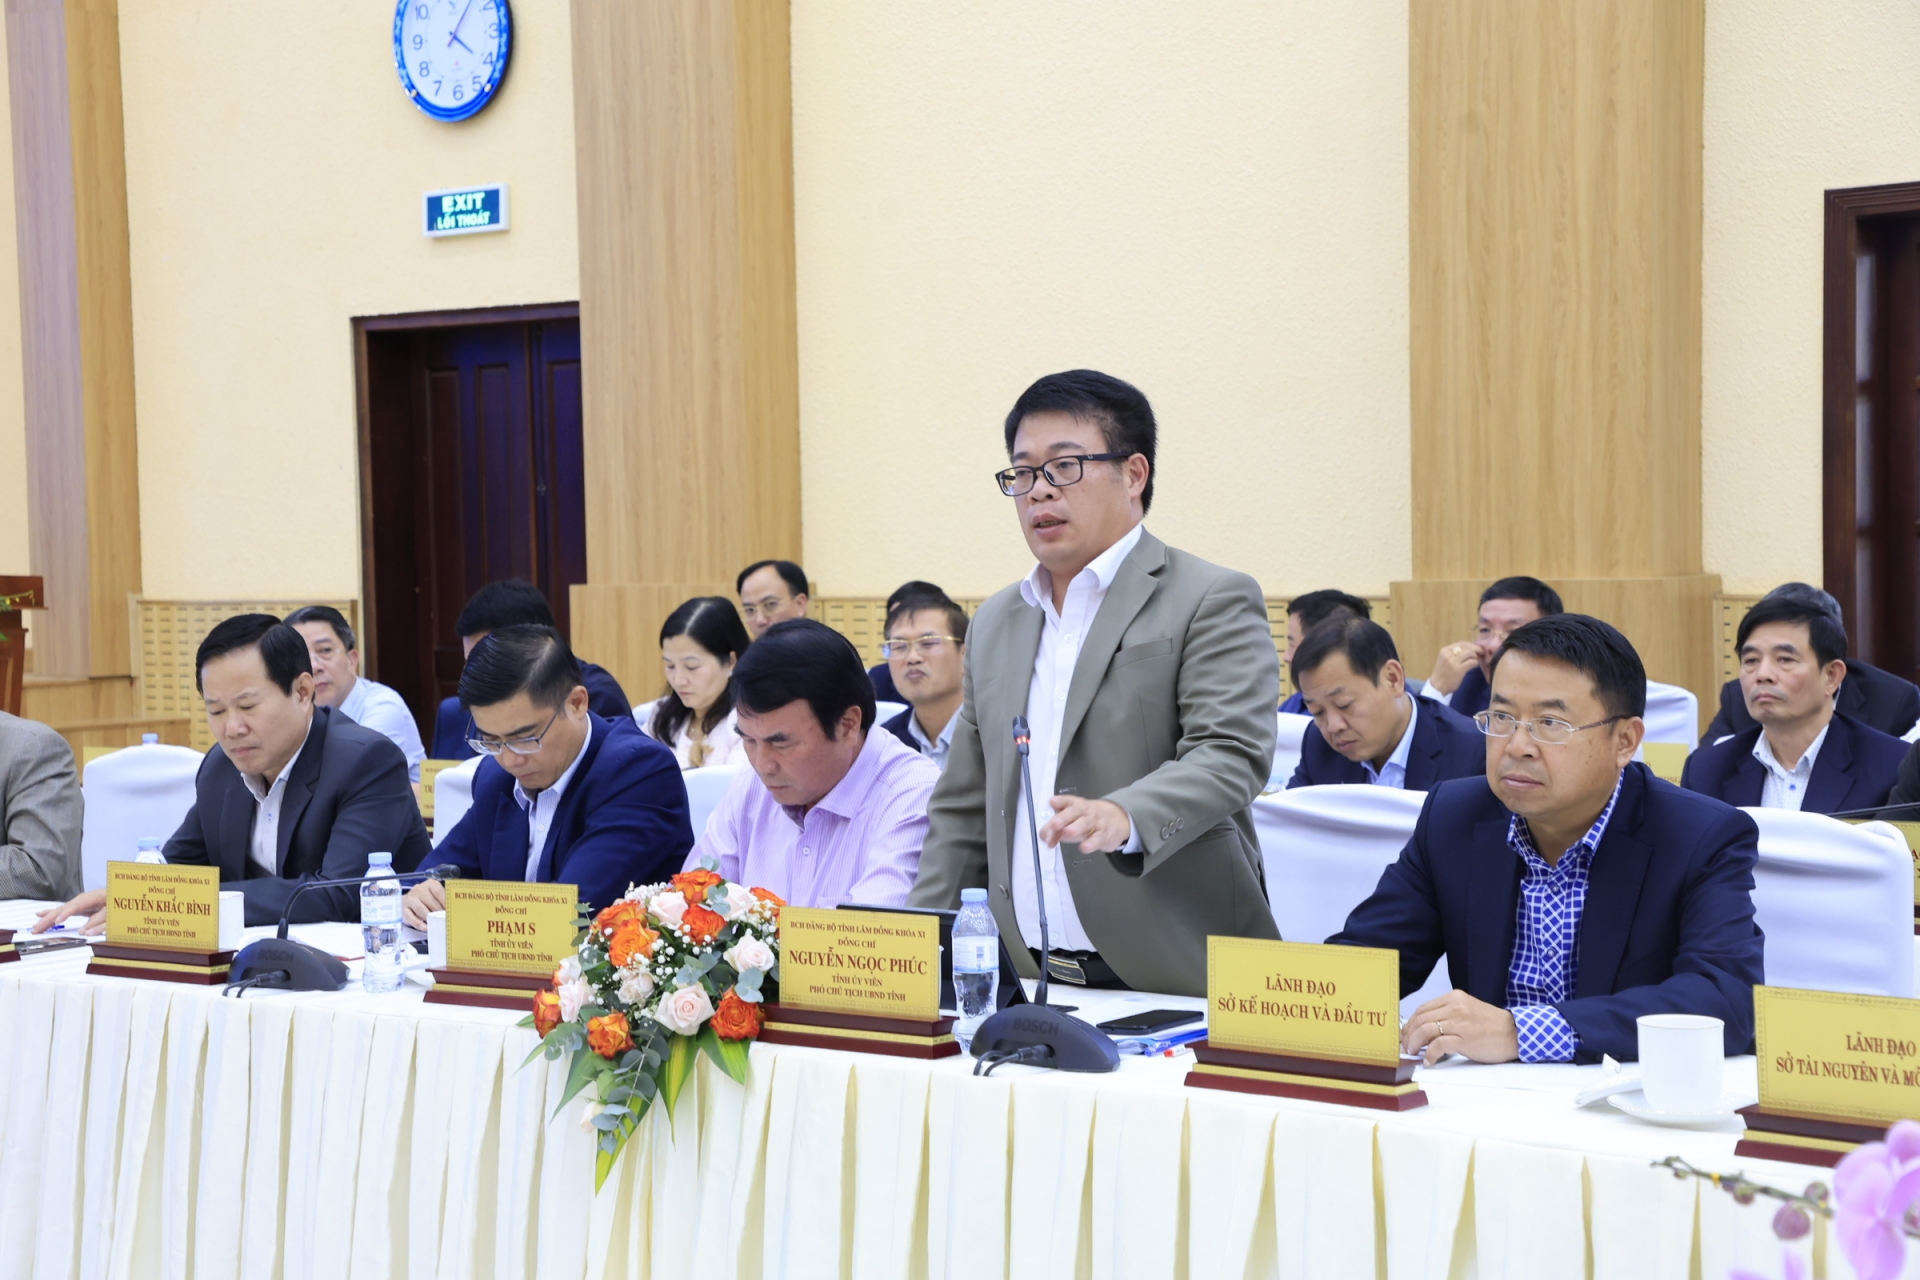 Phó Chủ tịch UBND tỉnh Nguyễn Ngọc Phúc trả lời doanh nghiệp về các quy định theo Luật Đất đai, Luật Khai thác khoáng sản…